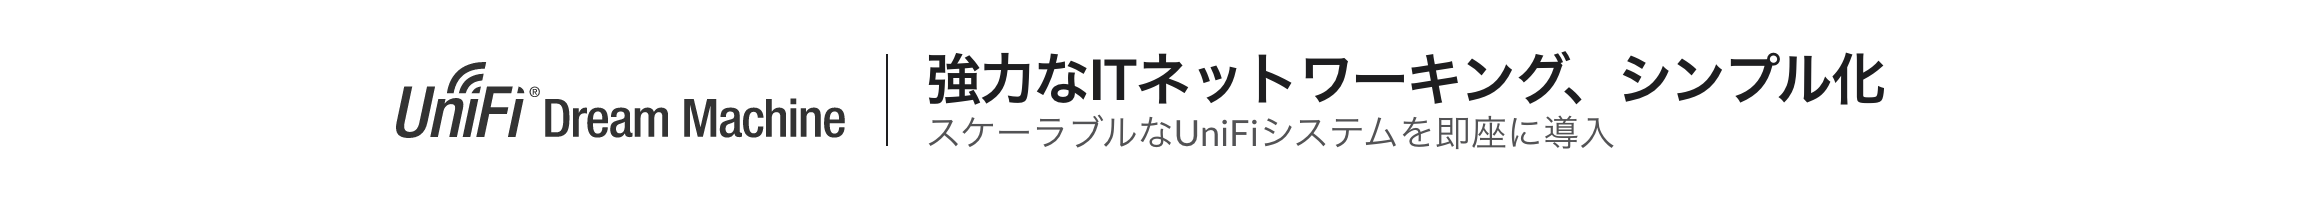 UniFi Dream Machine - UDM - | Ubiquiti UniFi （ユビキティ